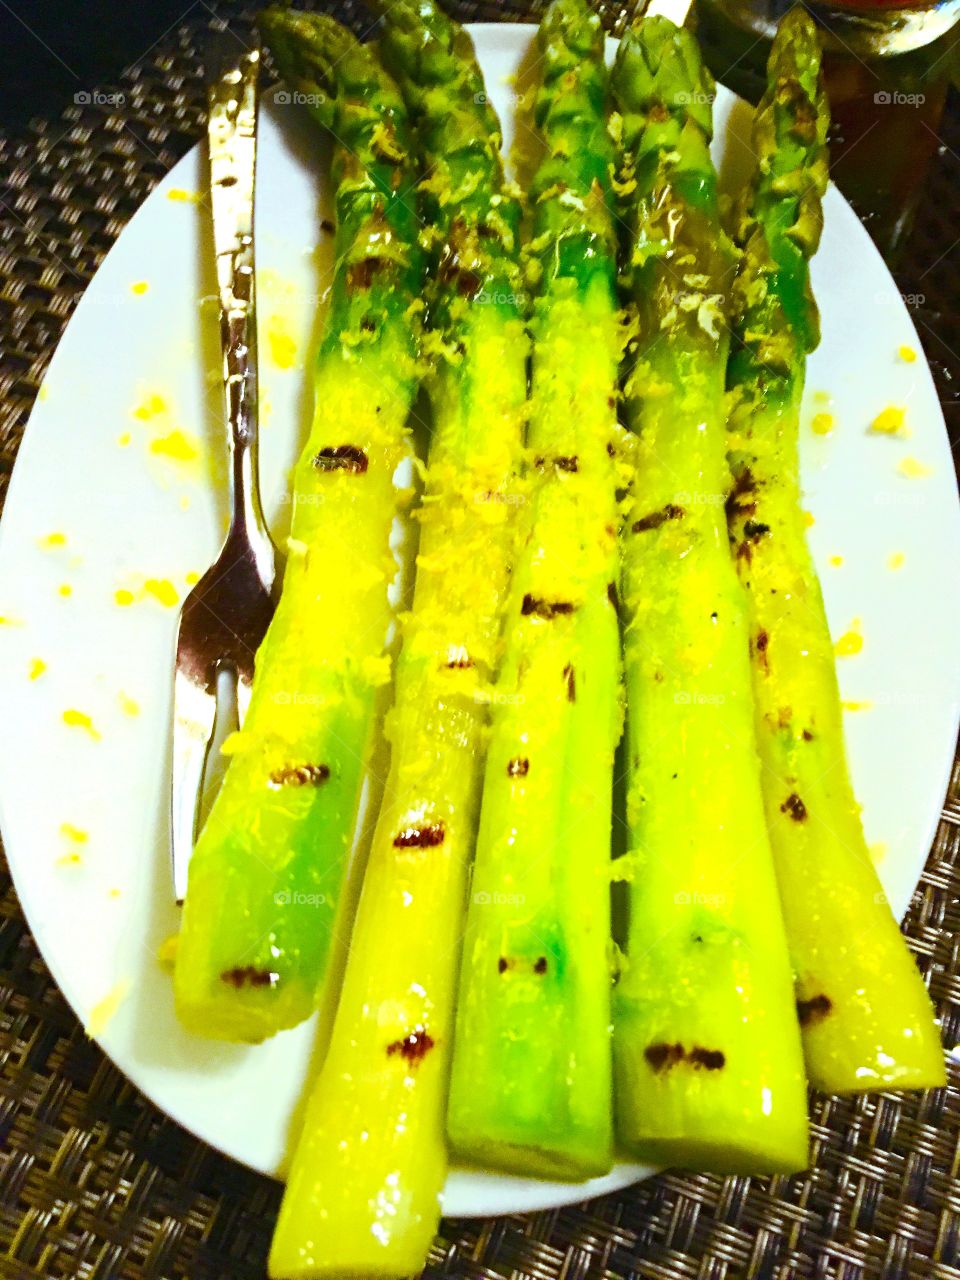 Asparagus in a restaurant.